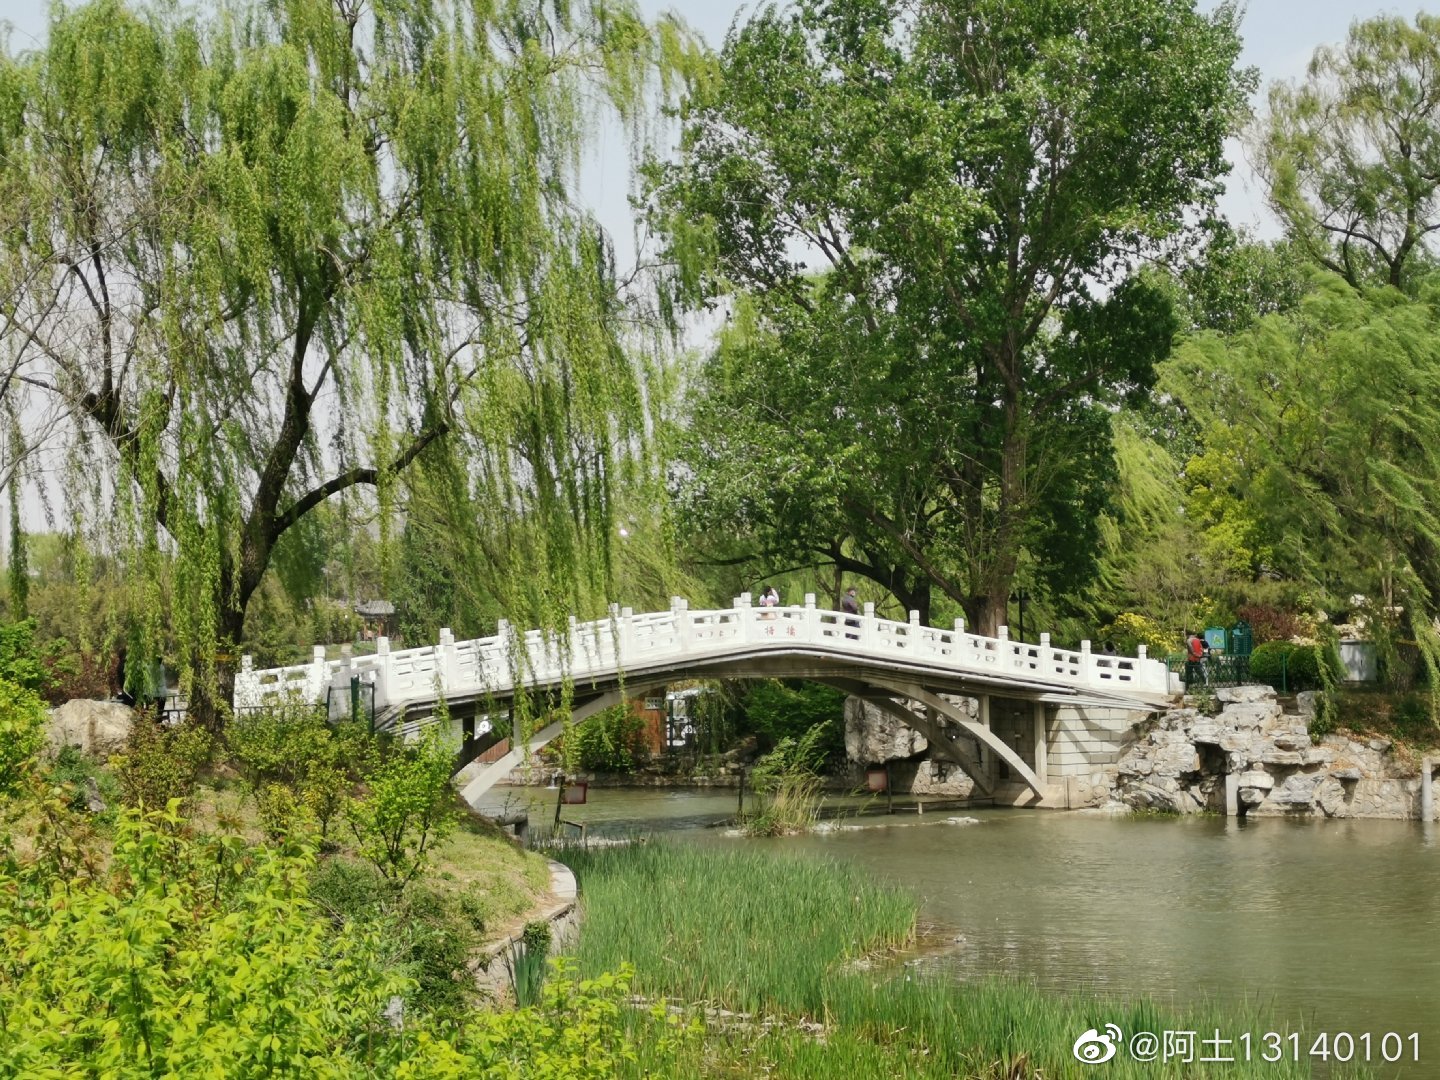 紫竹院公园：江南园林特色的大型公园